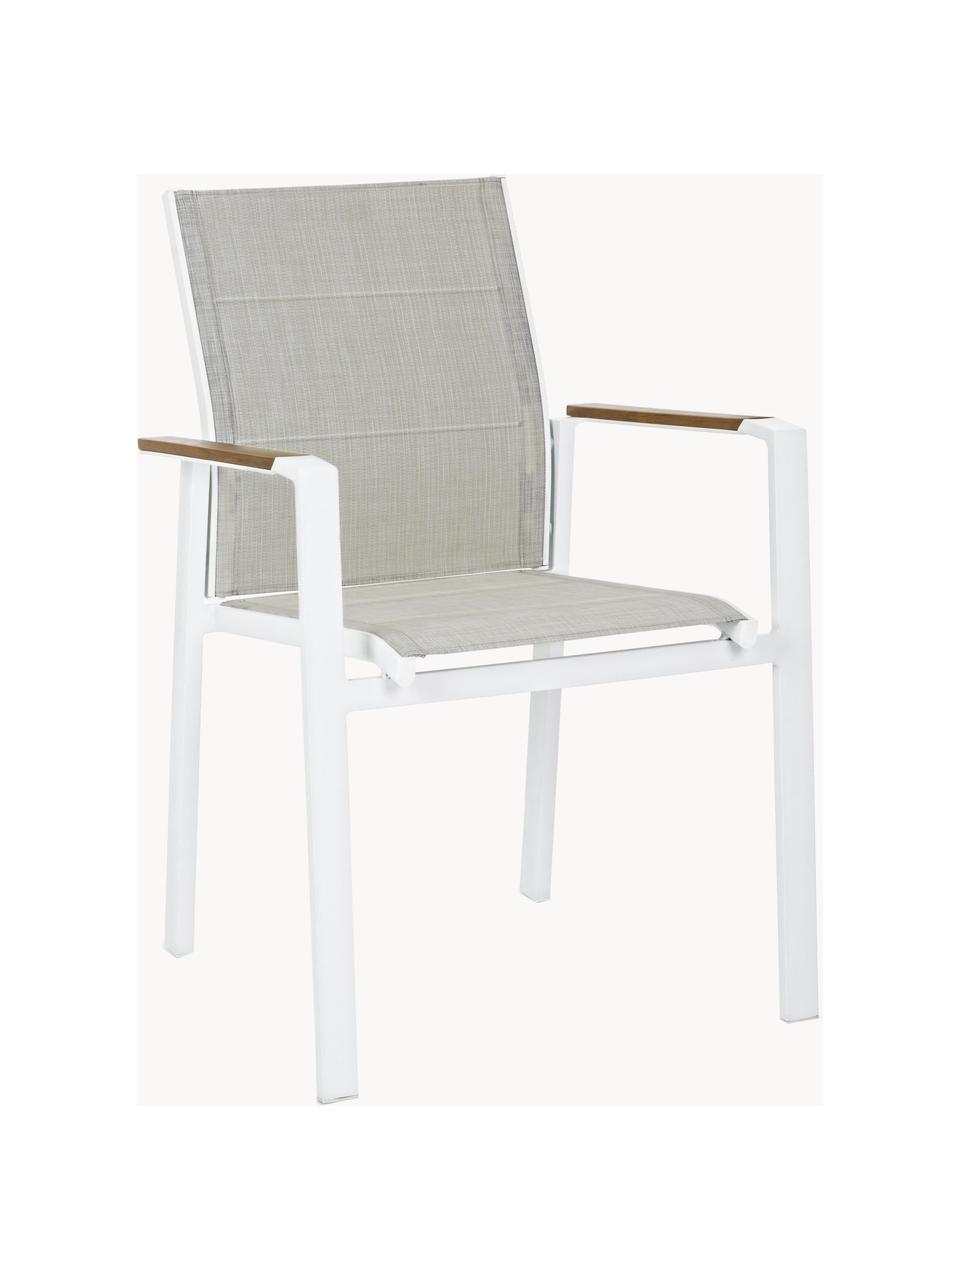 Zahradní židle s područkami Kubik, Greige, bílá, Š 57 cm, H 62 cm